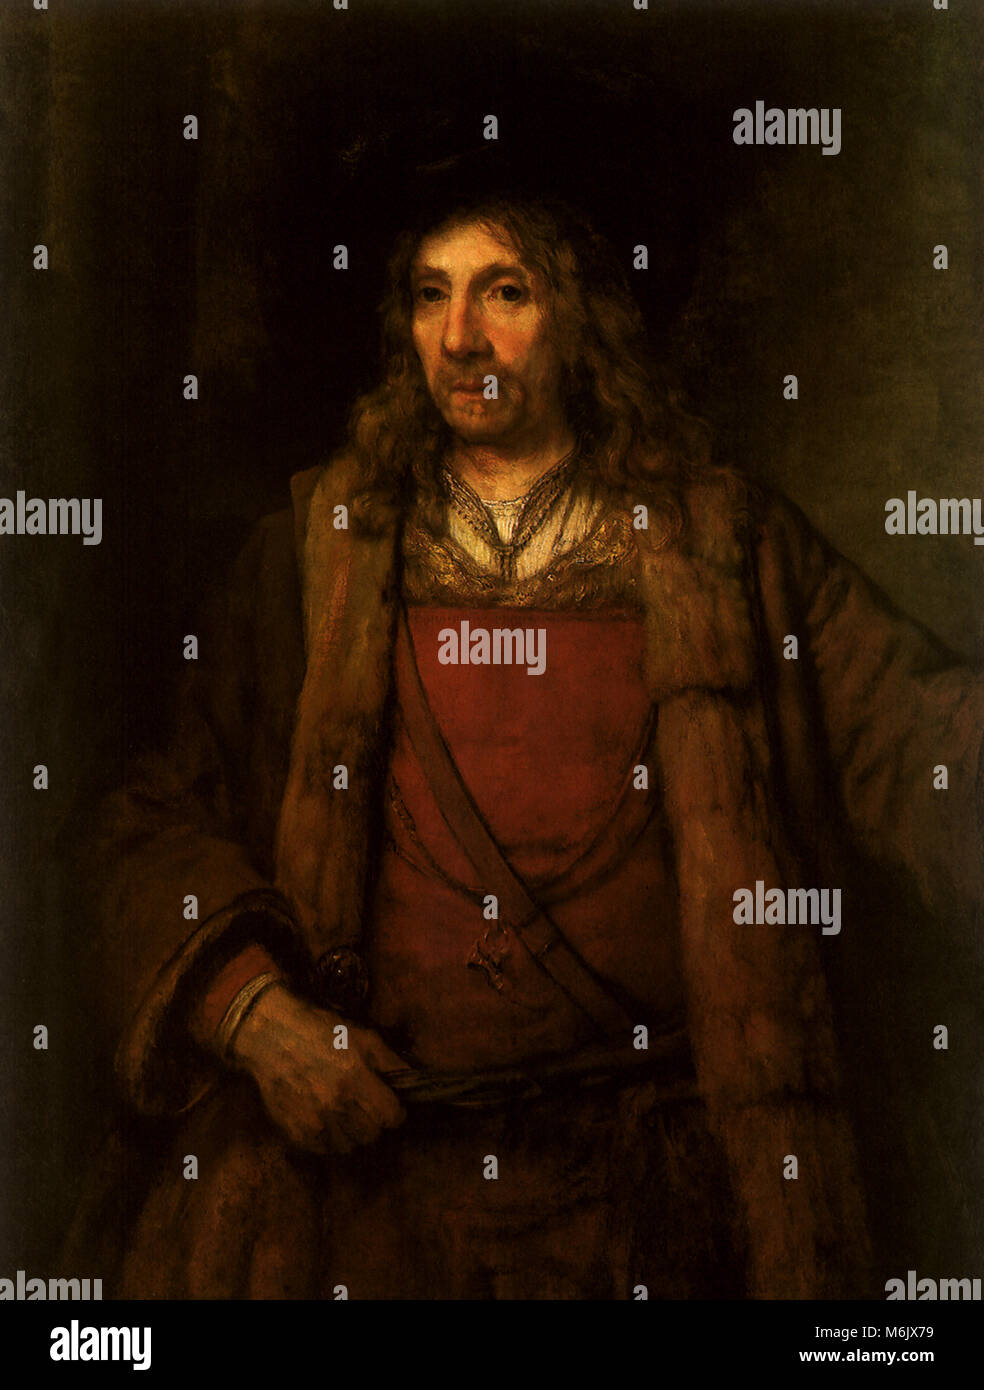 Porträt eines Mannes in einem Fur-Lined Mantel, Rembrandt, Harmensz van Rijn, 1654. Stockfoto